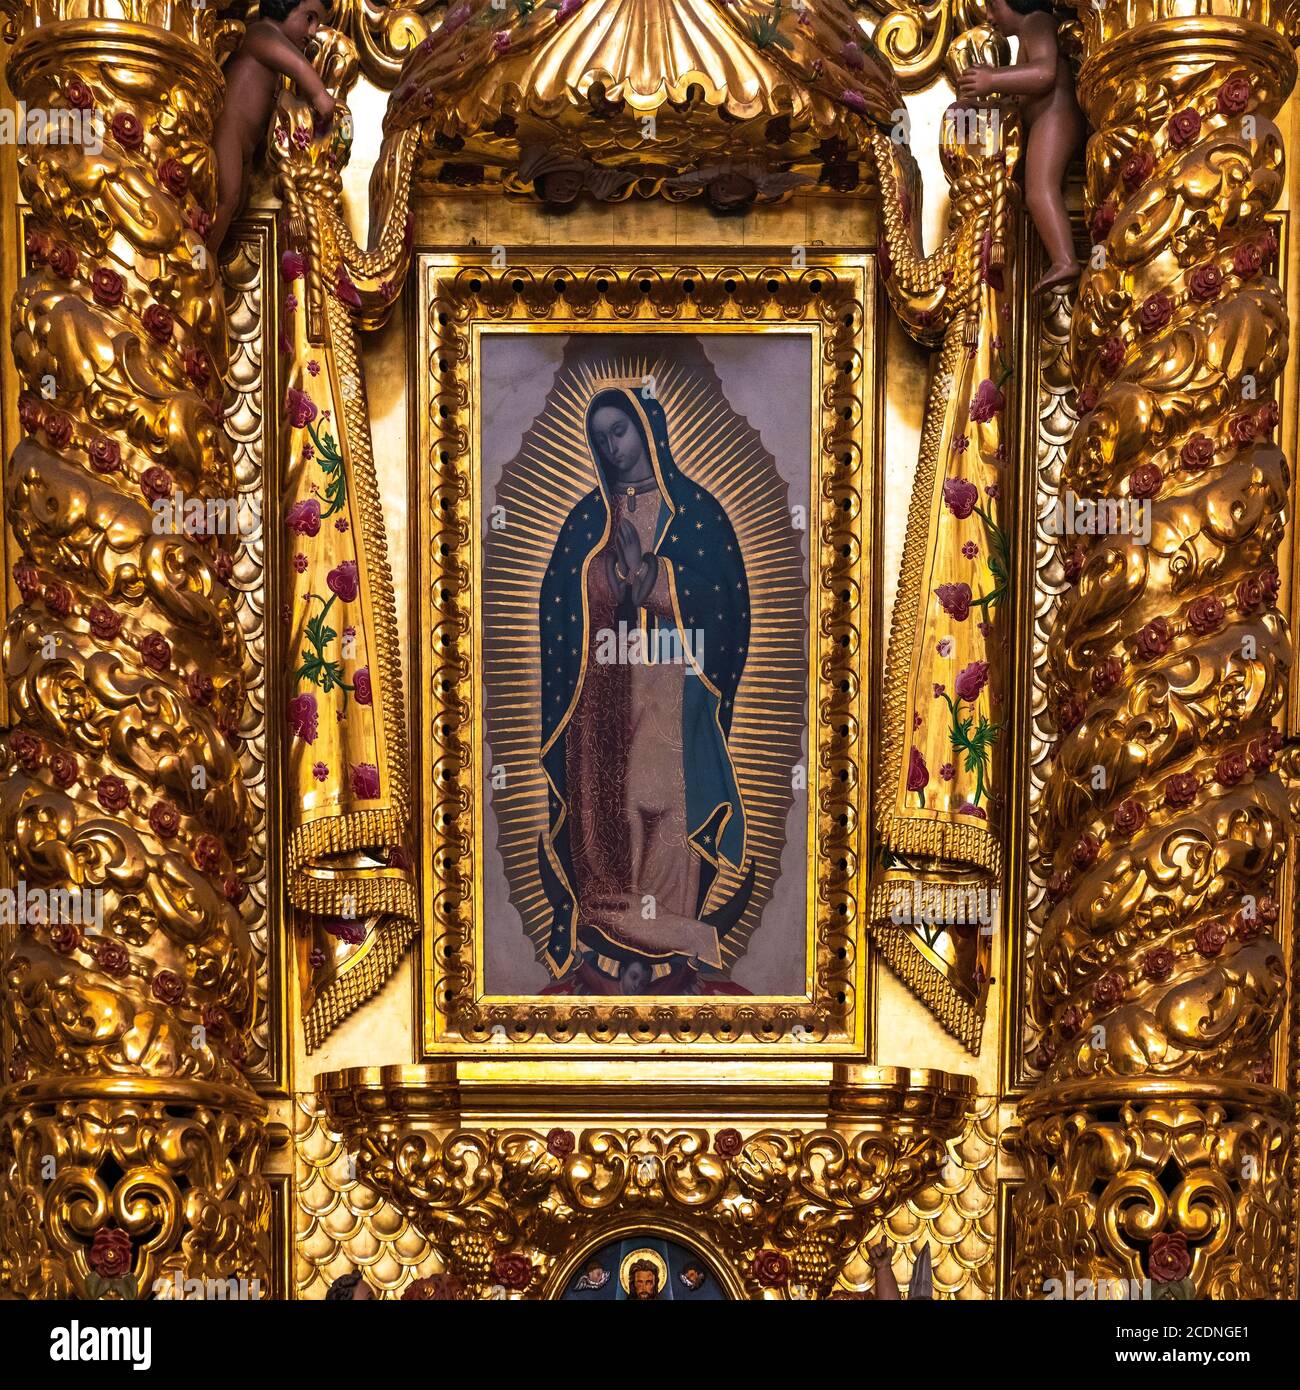 Peinture de notre Dame de Guadalupe Vierge Marie dans un autel de décoration de feuille d'or de style baroque à l'intérieur de la cathédrale Saint-Domingue, Oaxaca, Mexique. Banque D'Images